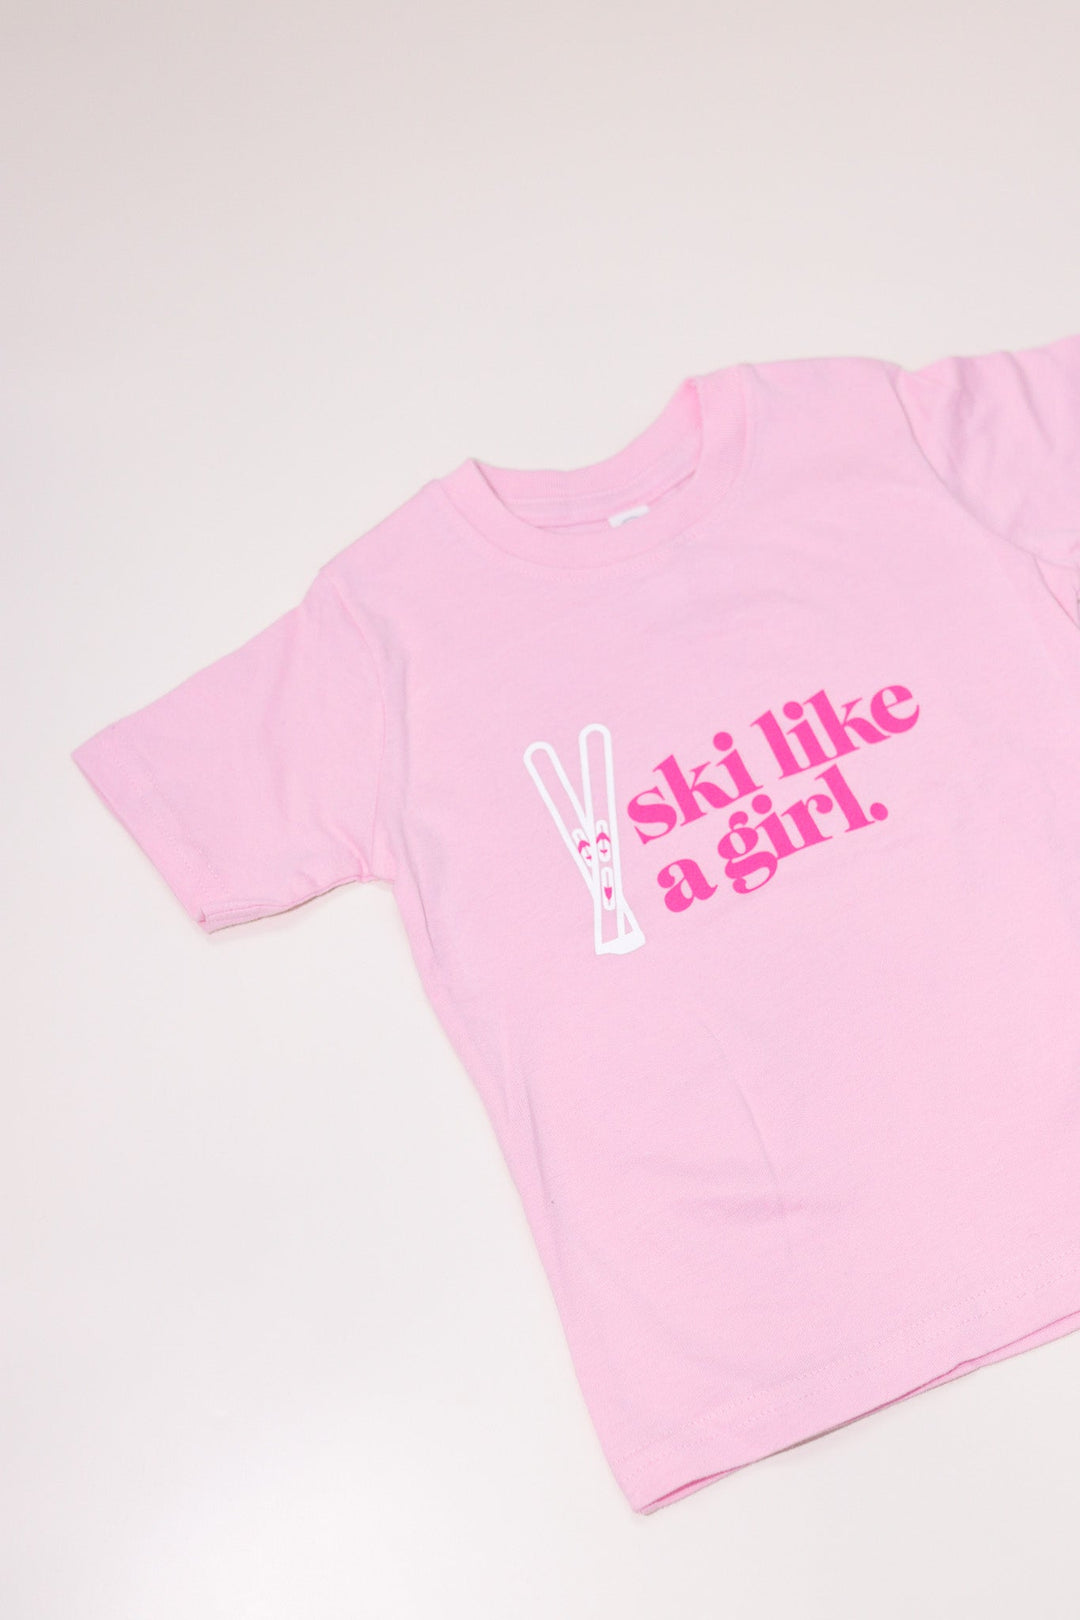 Ski Like a Girl Pink Toddler Tee - Heyday